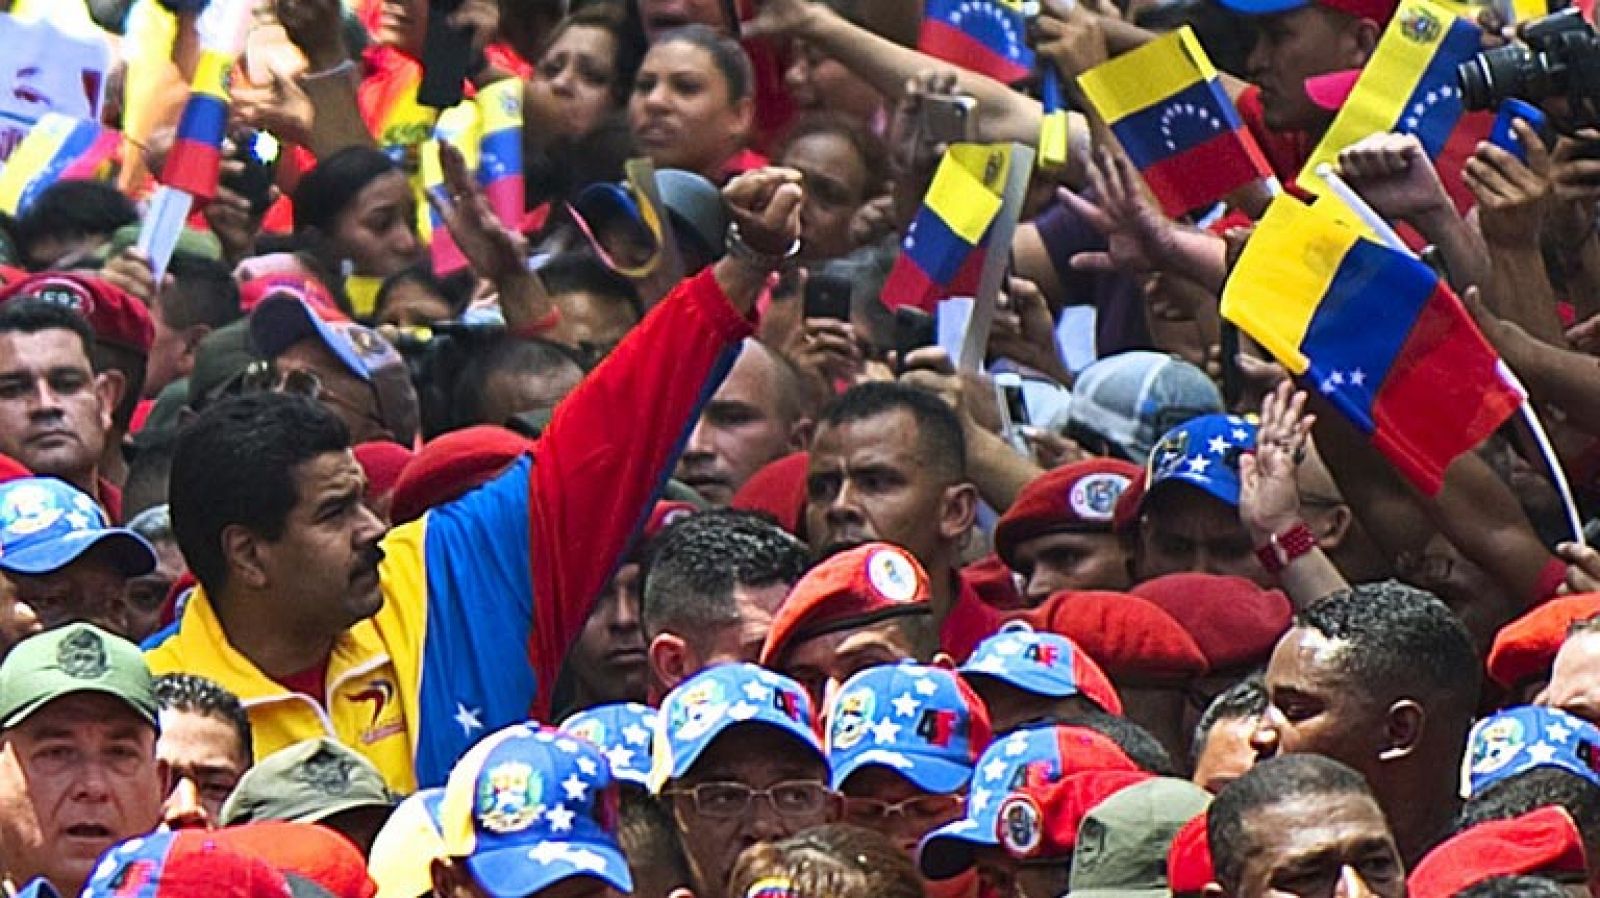 El vicepresidente Nicolás Maduro recoge el testigo de Chávez